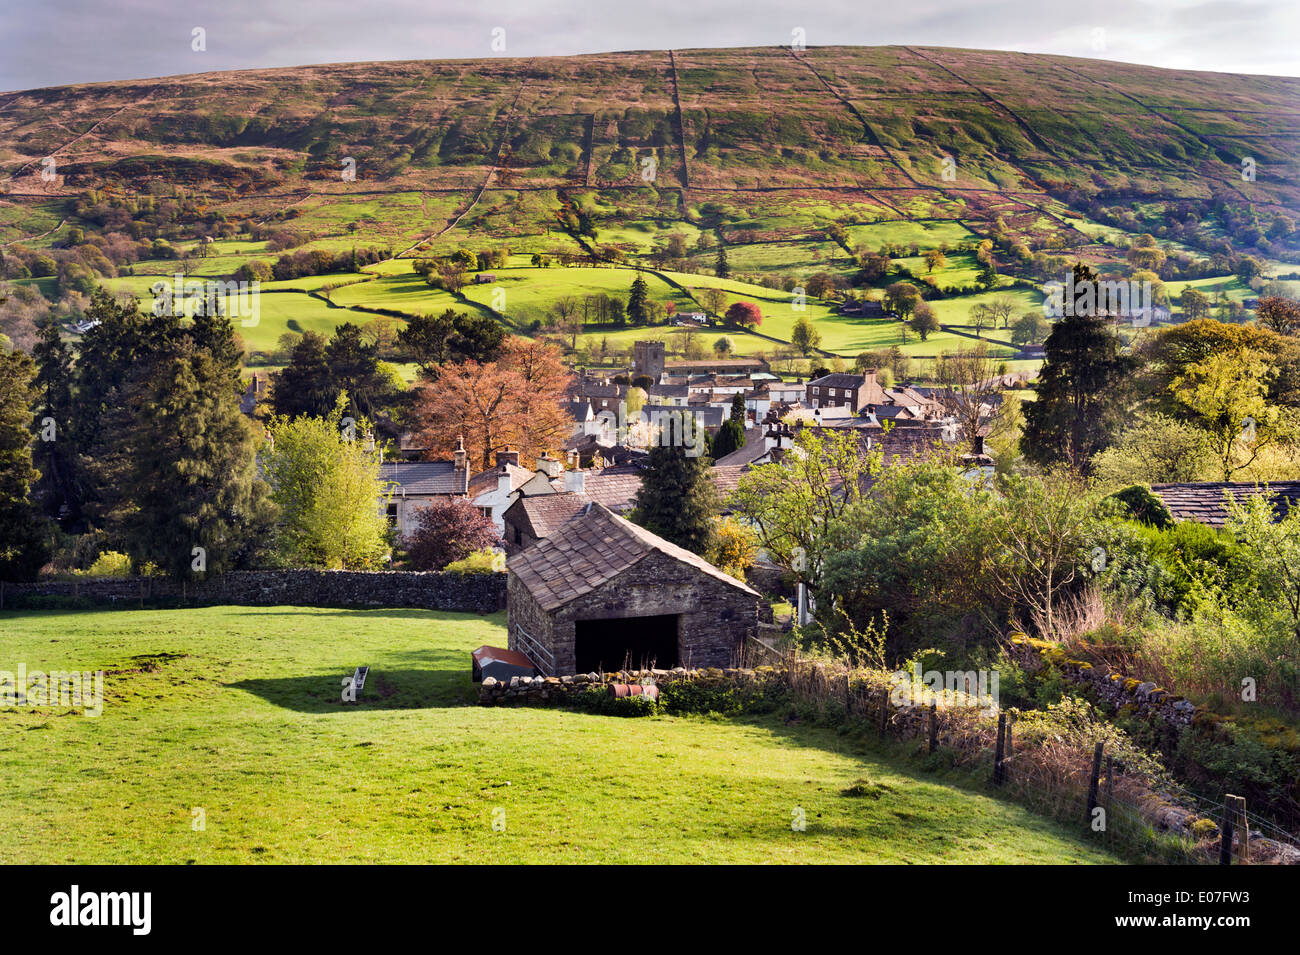 Frühlingsmorgen, befindet sich das Dorf Dent, Cumbria, UK, in der Yorkshire Dales National Park, UK. Stockfoto